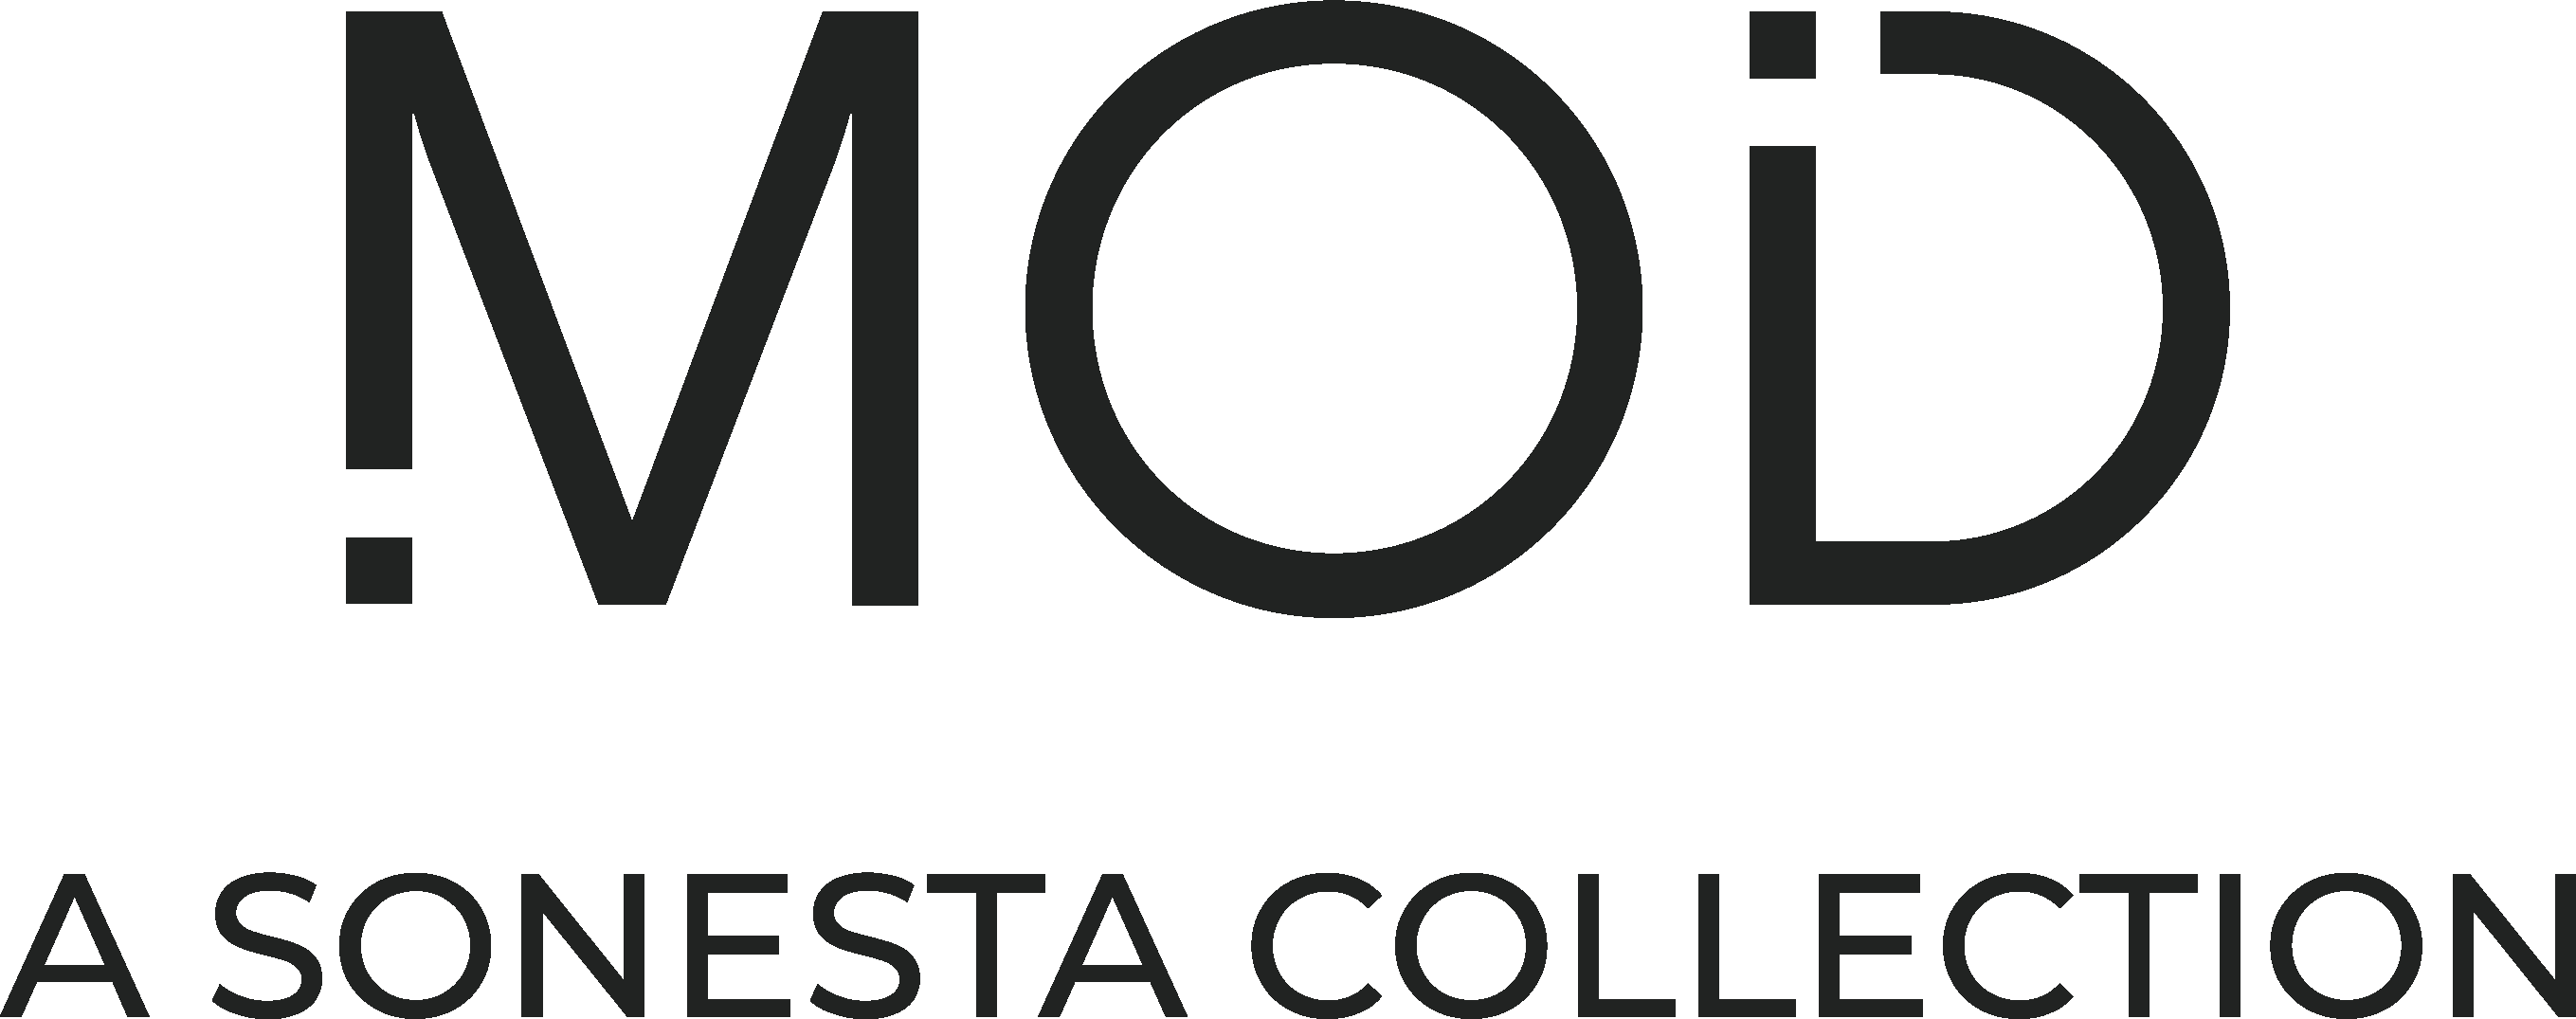 MOD - A Sonesta Collection